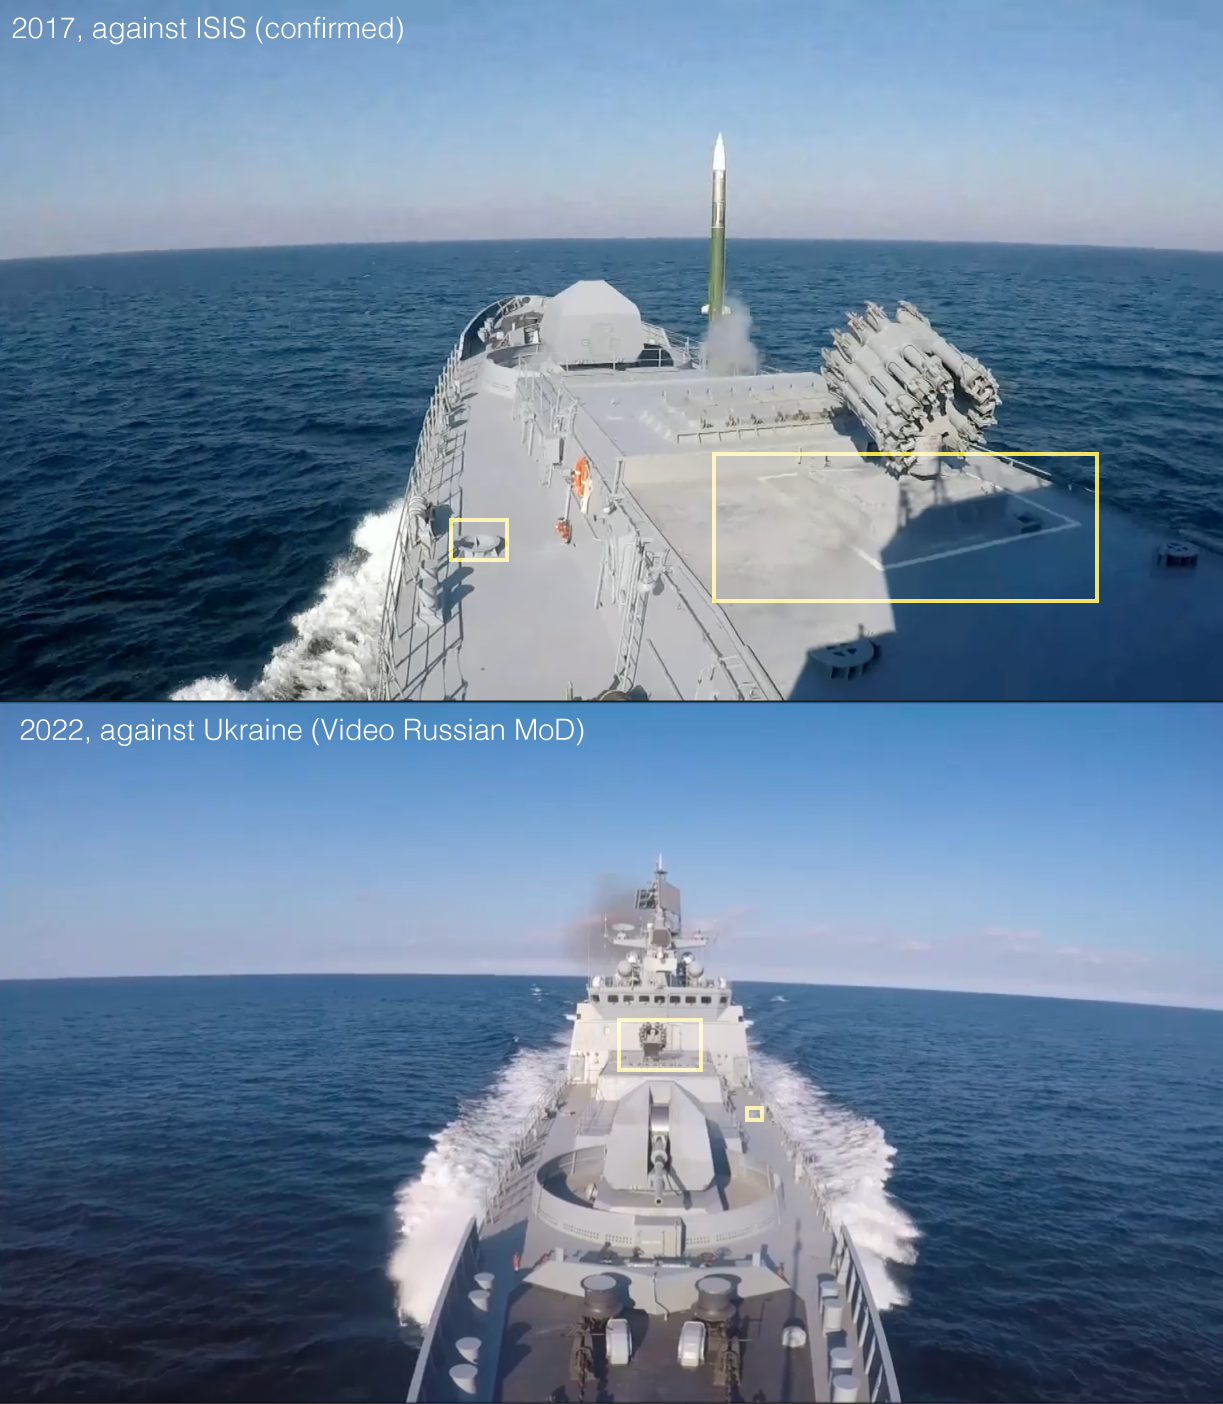 Moderner Seekrieg: Neues Marine-Schach